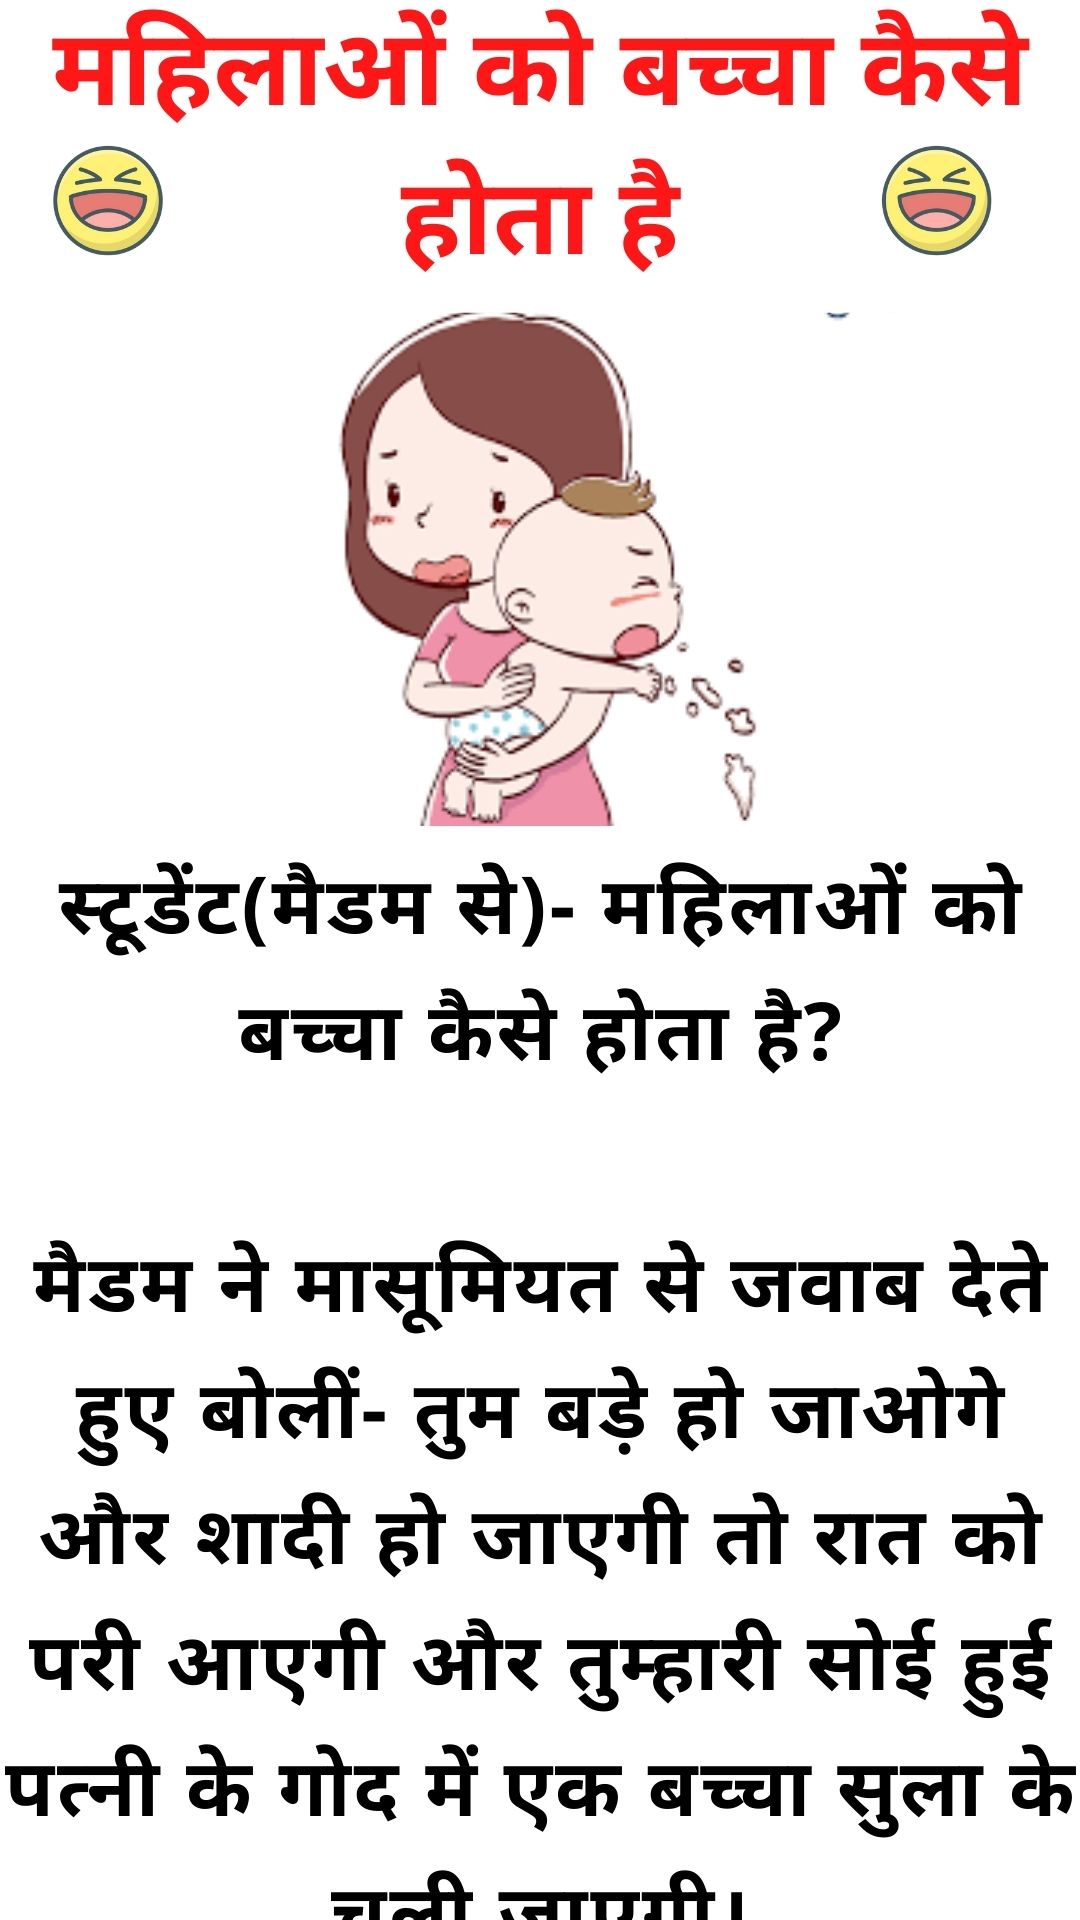 महिलाओं को बच्चा कैसे होता है - Double meaning jokes in hindi